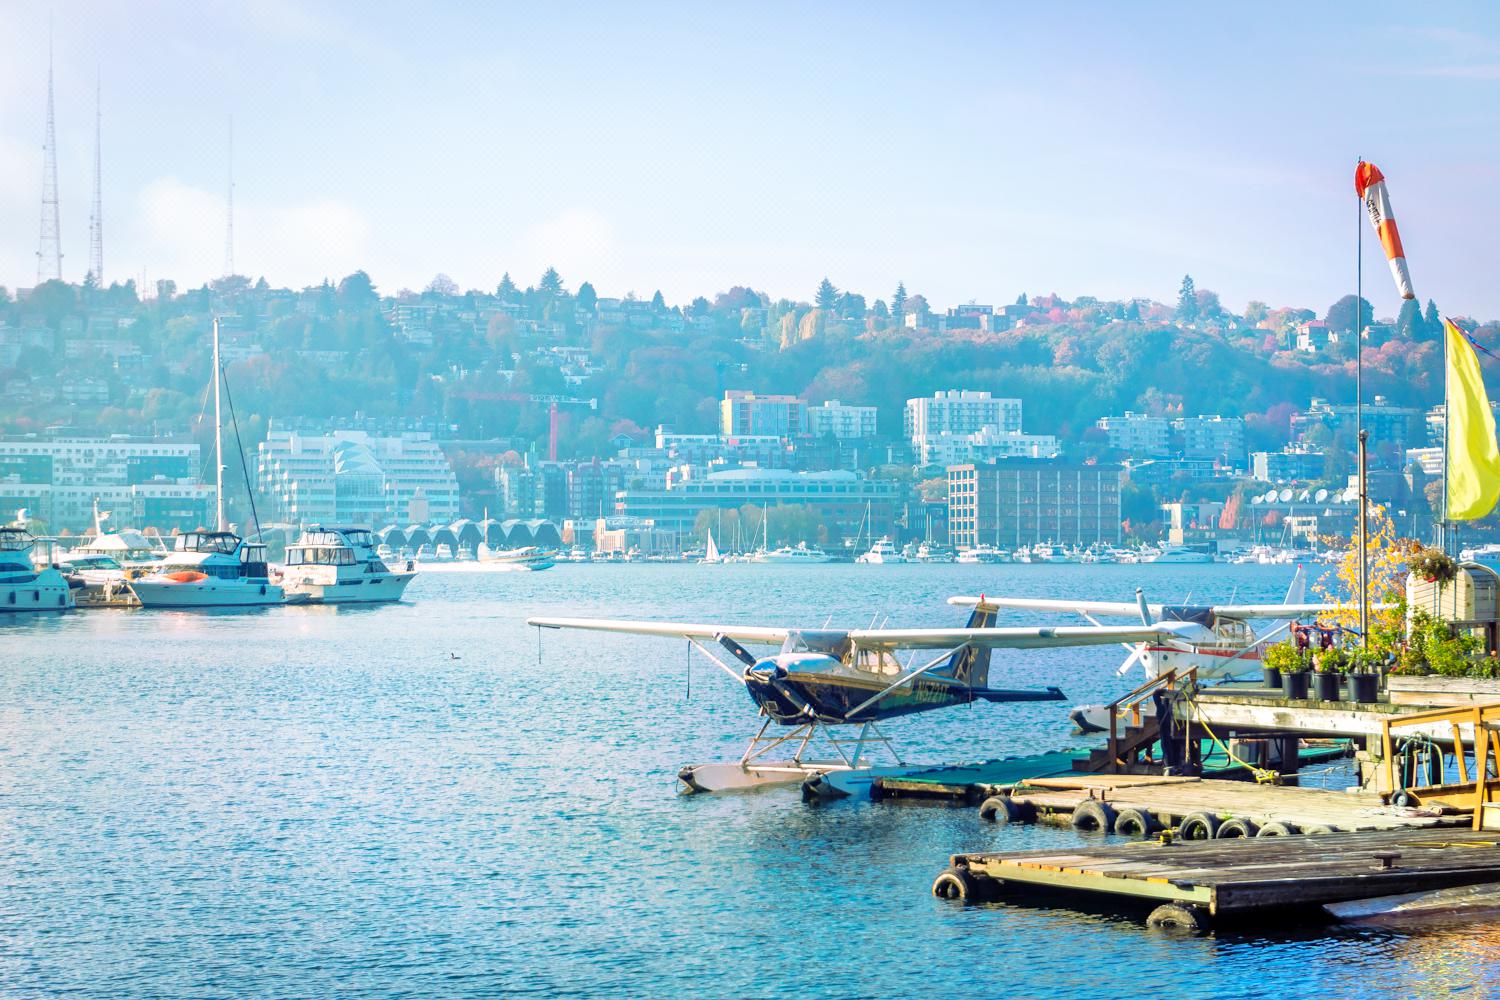 西雅图水上飞机攻略 水上飞机门票价格多少钱 团购票价预定优惠 景点地址图片 携程攻略